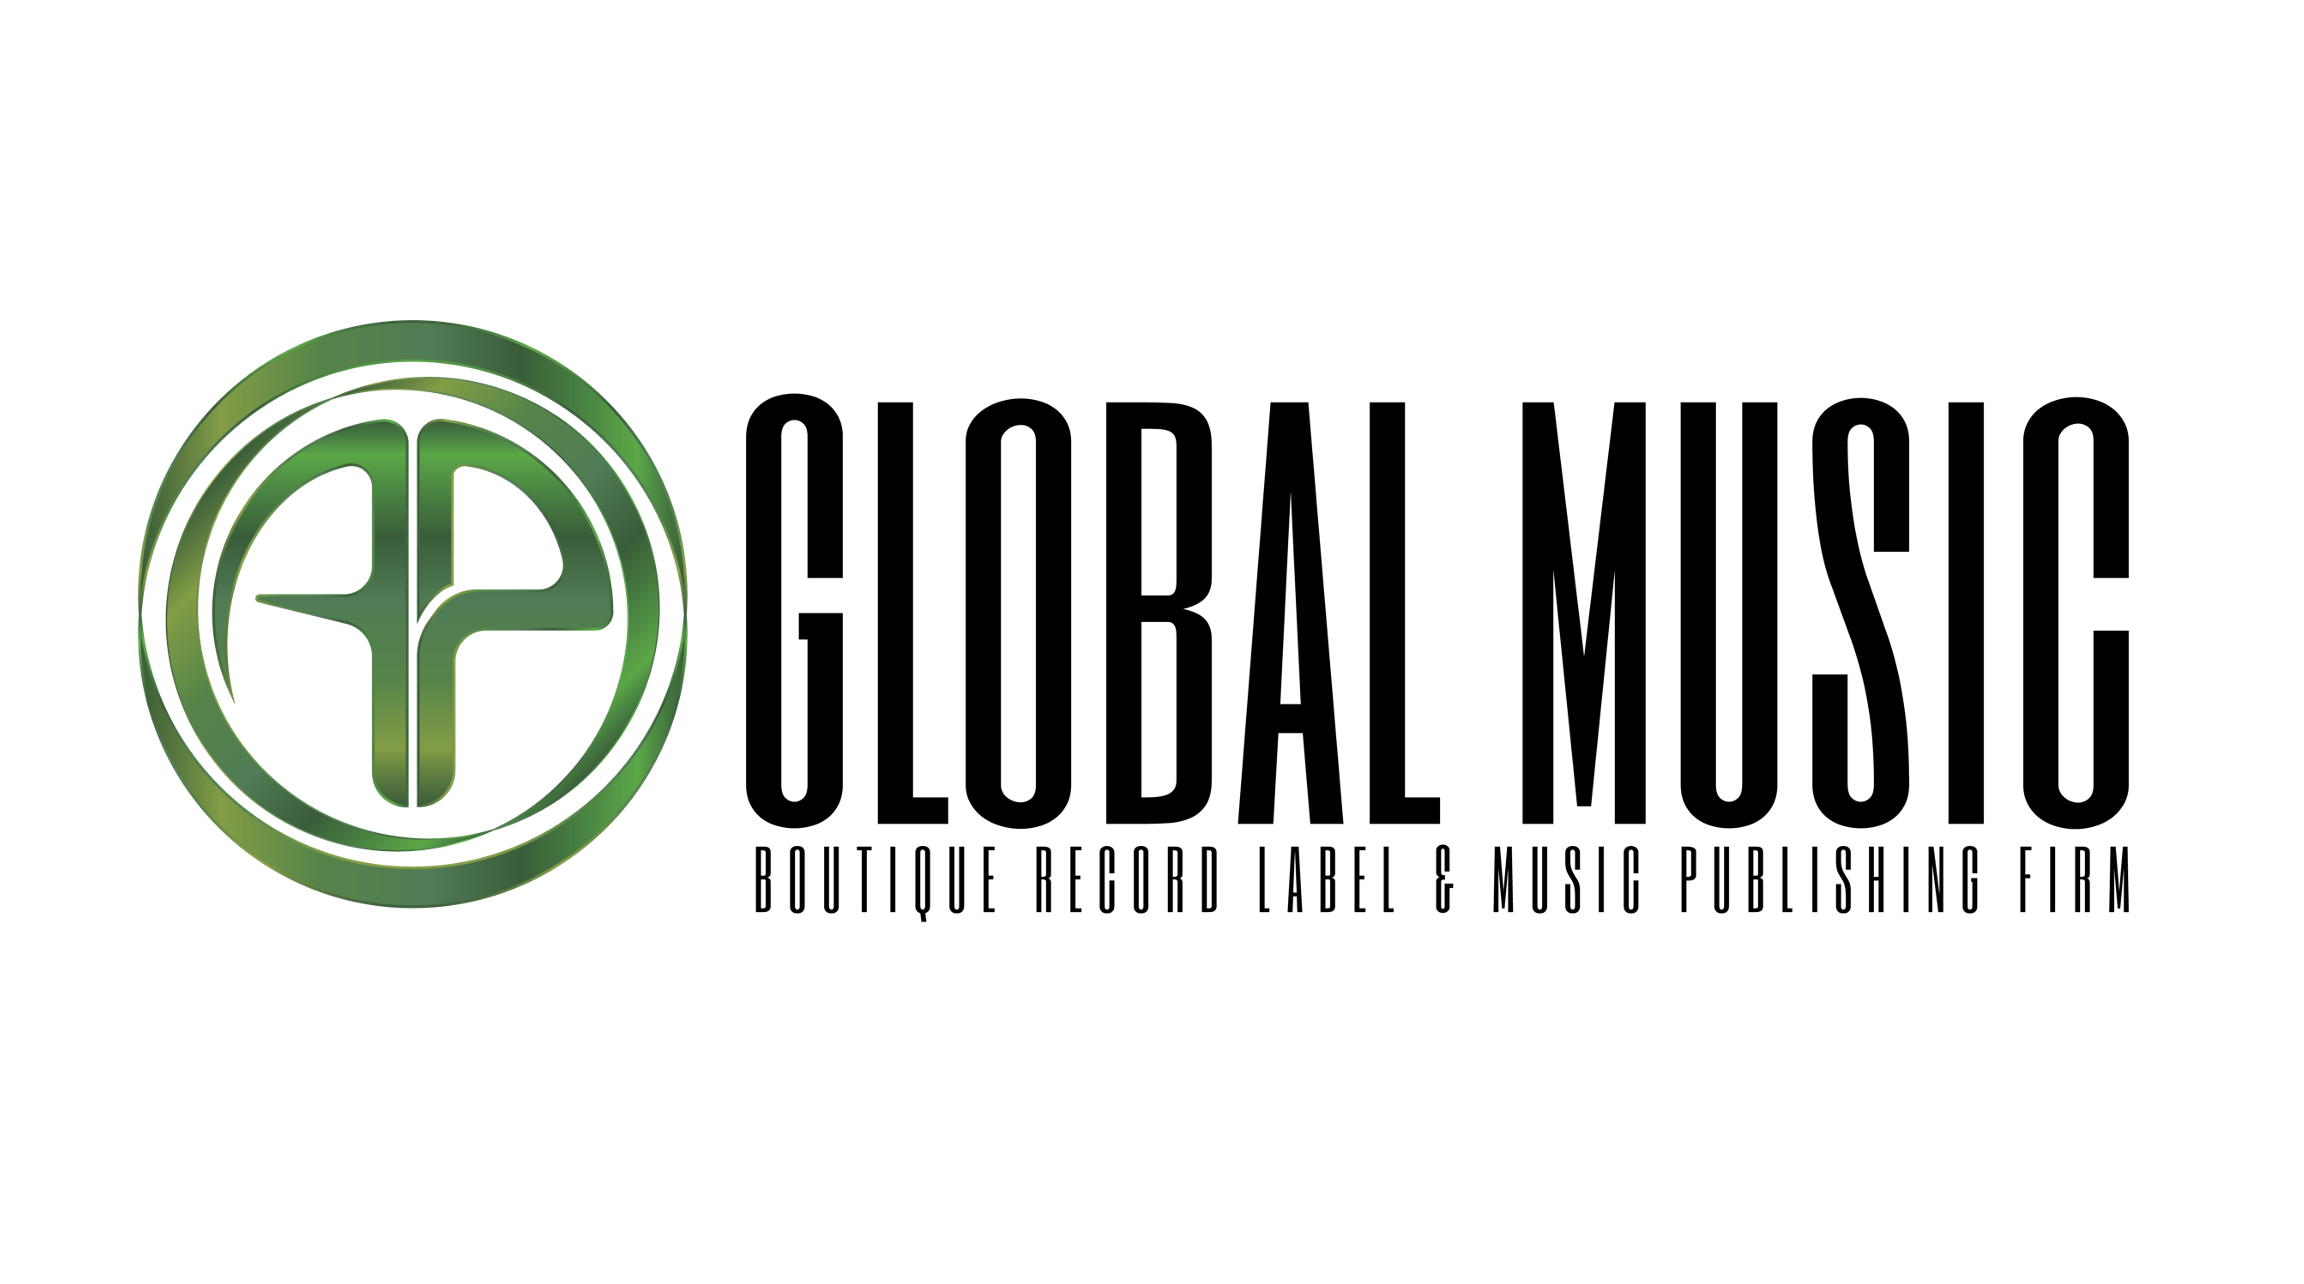 AP Global Music